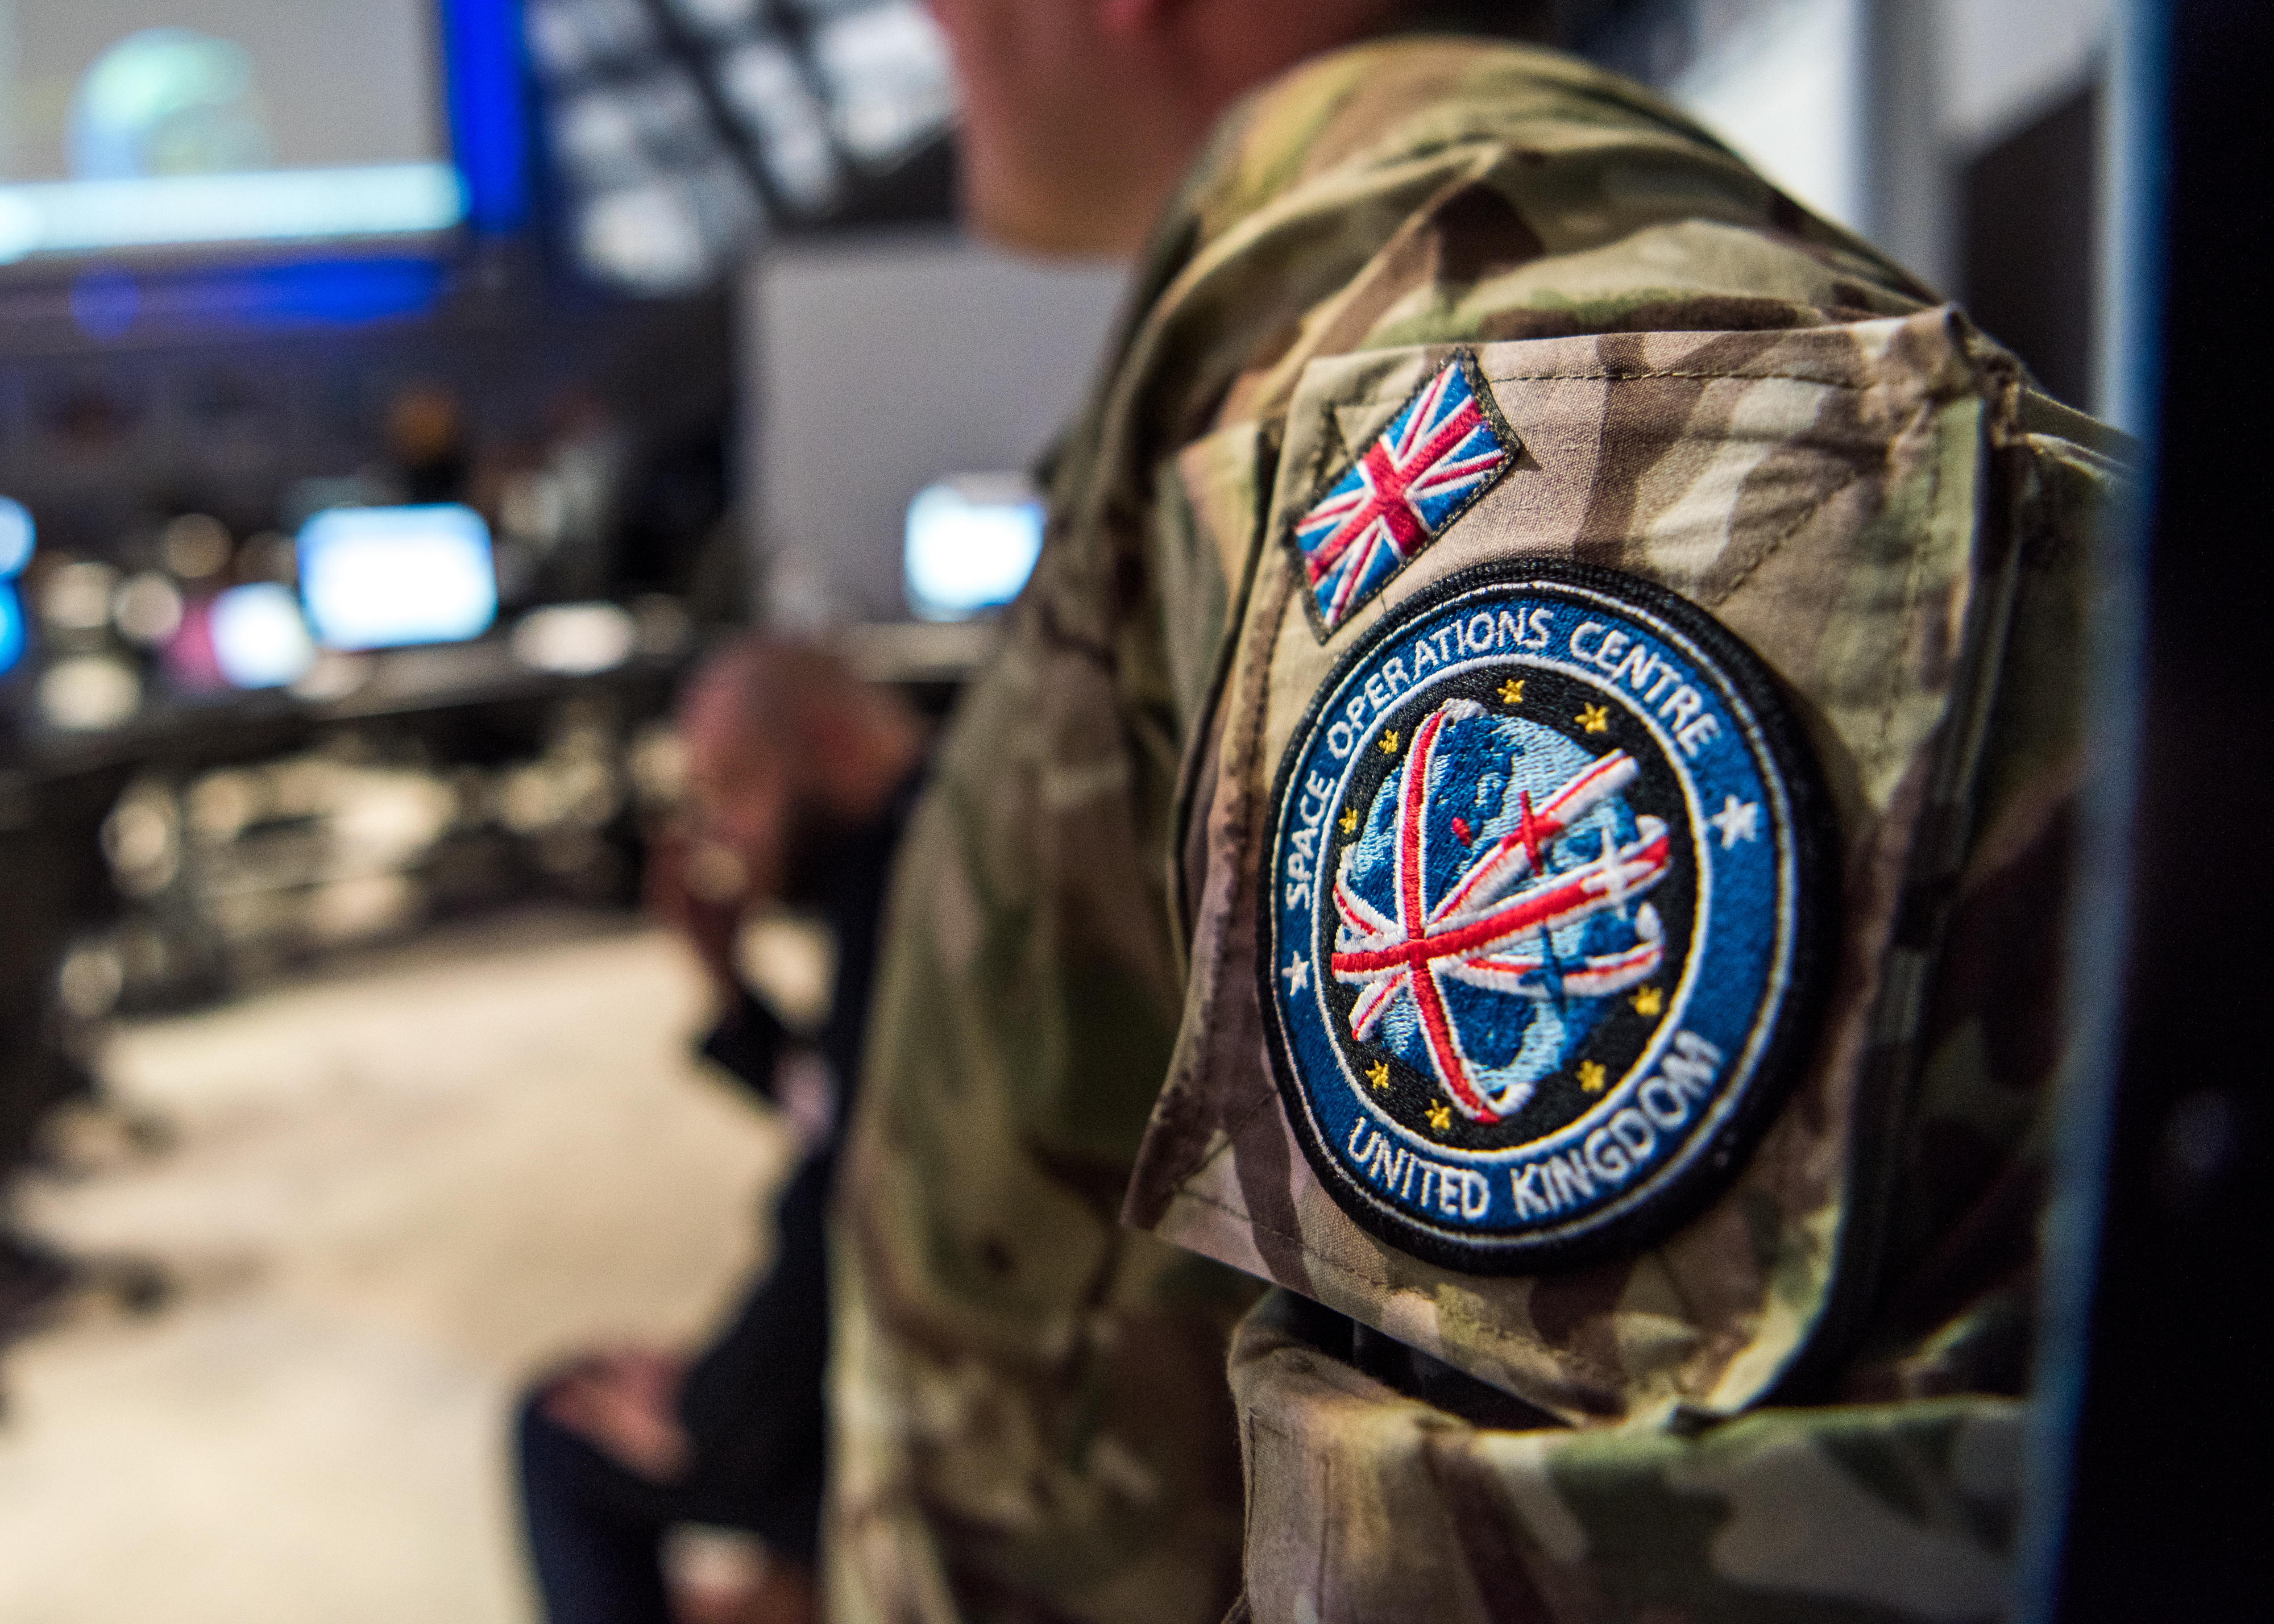 UK Space Command badge on uniform shoulder.